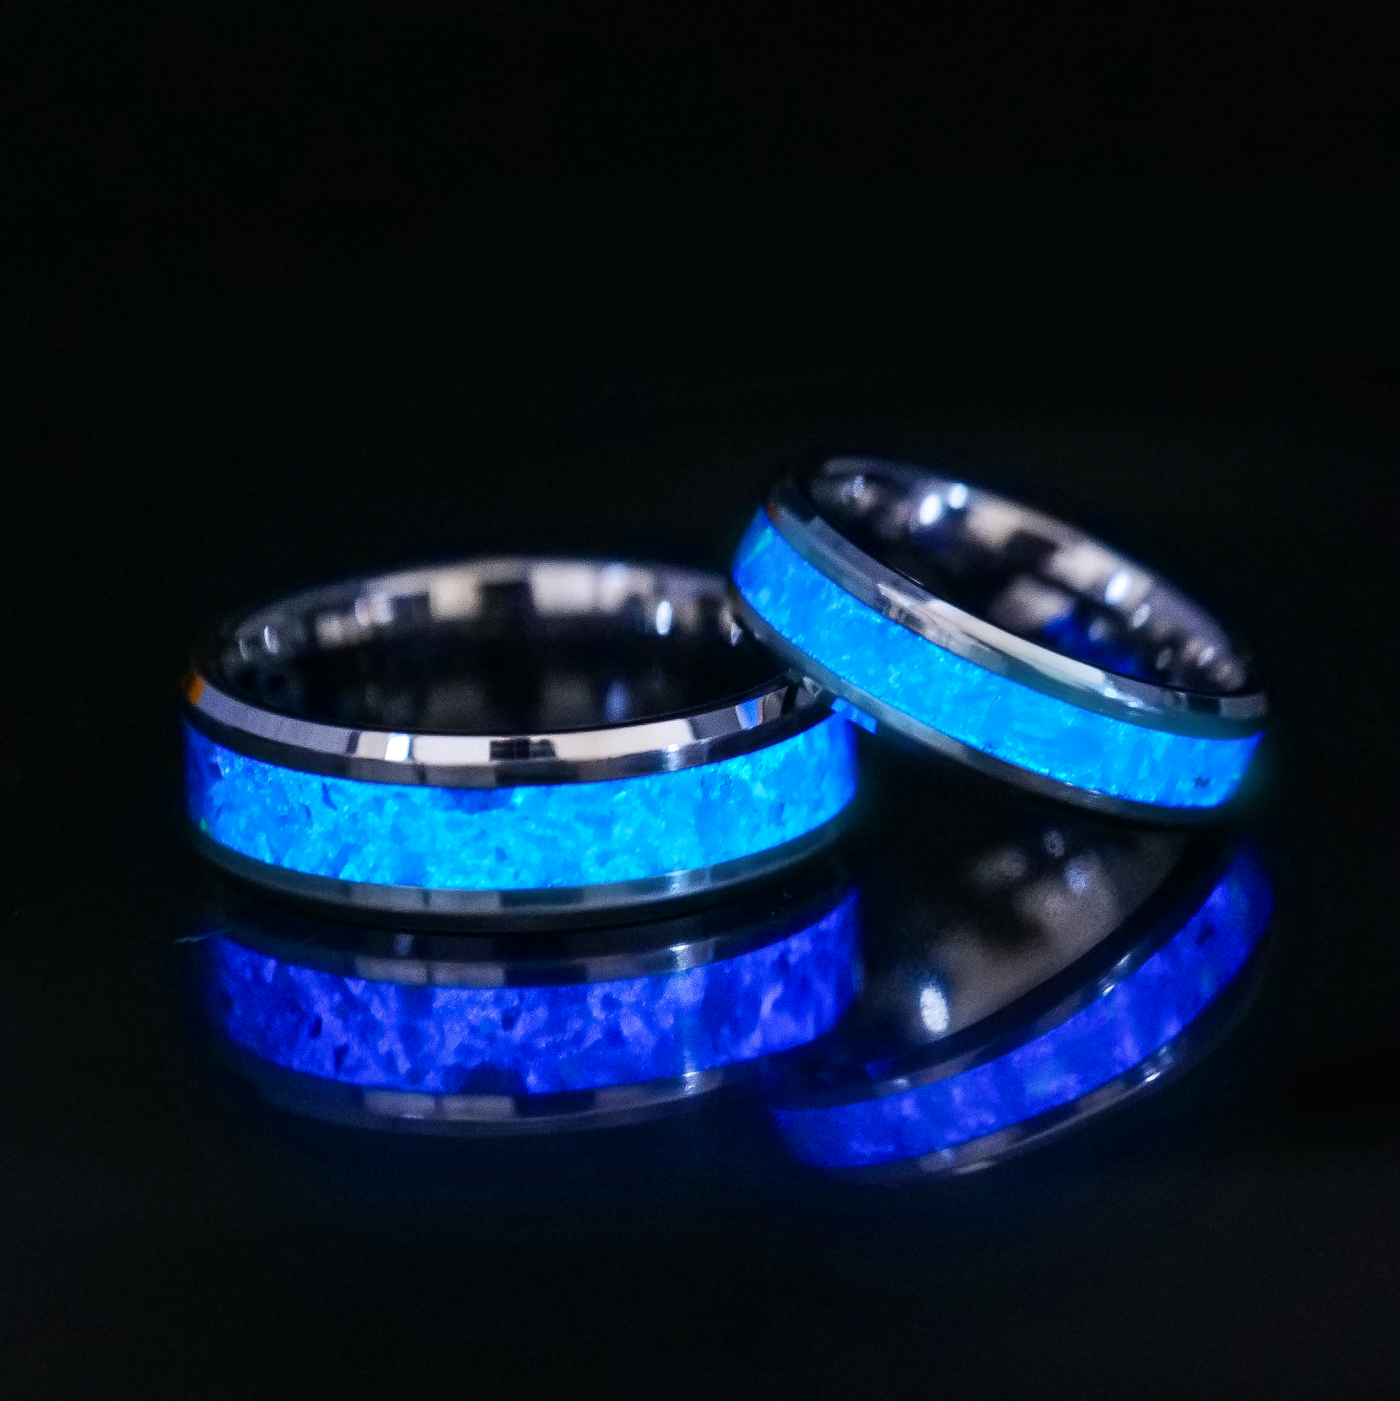 Matching Custom Glowstone Wedding Ring Set - Patrick Adair Designs